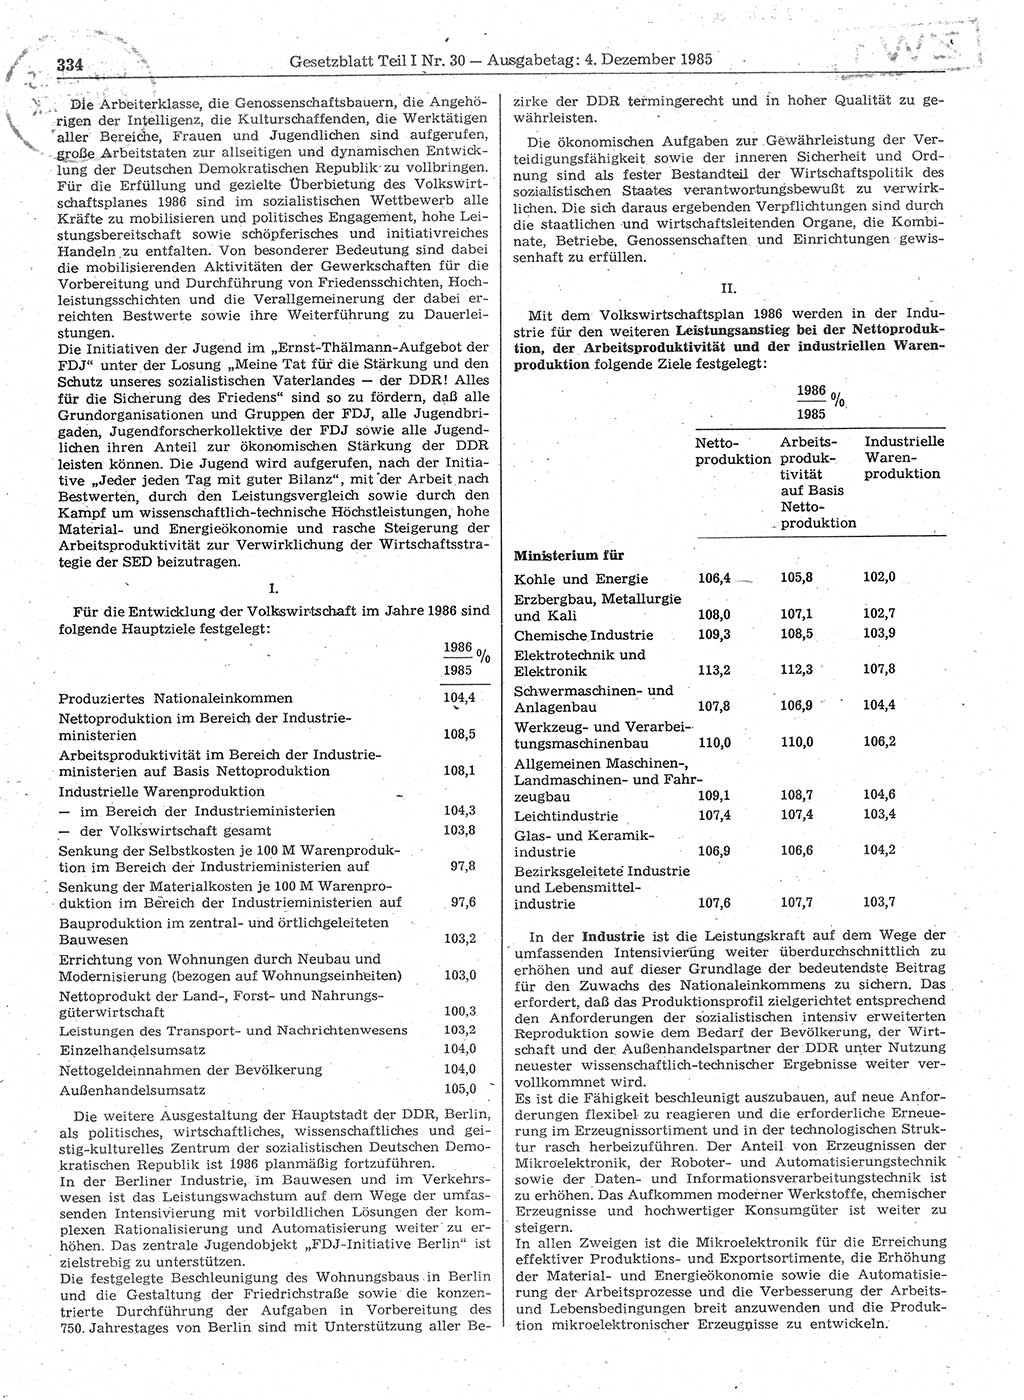 Gesetzblatt (GBl.) der Deutschen Demokratischen Republik (DDR) Teil Ⅰ 1985, Seite 334 (GBl. DDR Ⅰ 1985, S. 334)